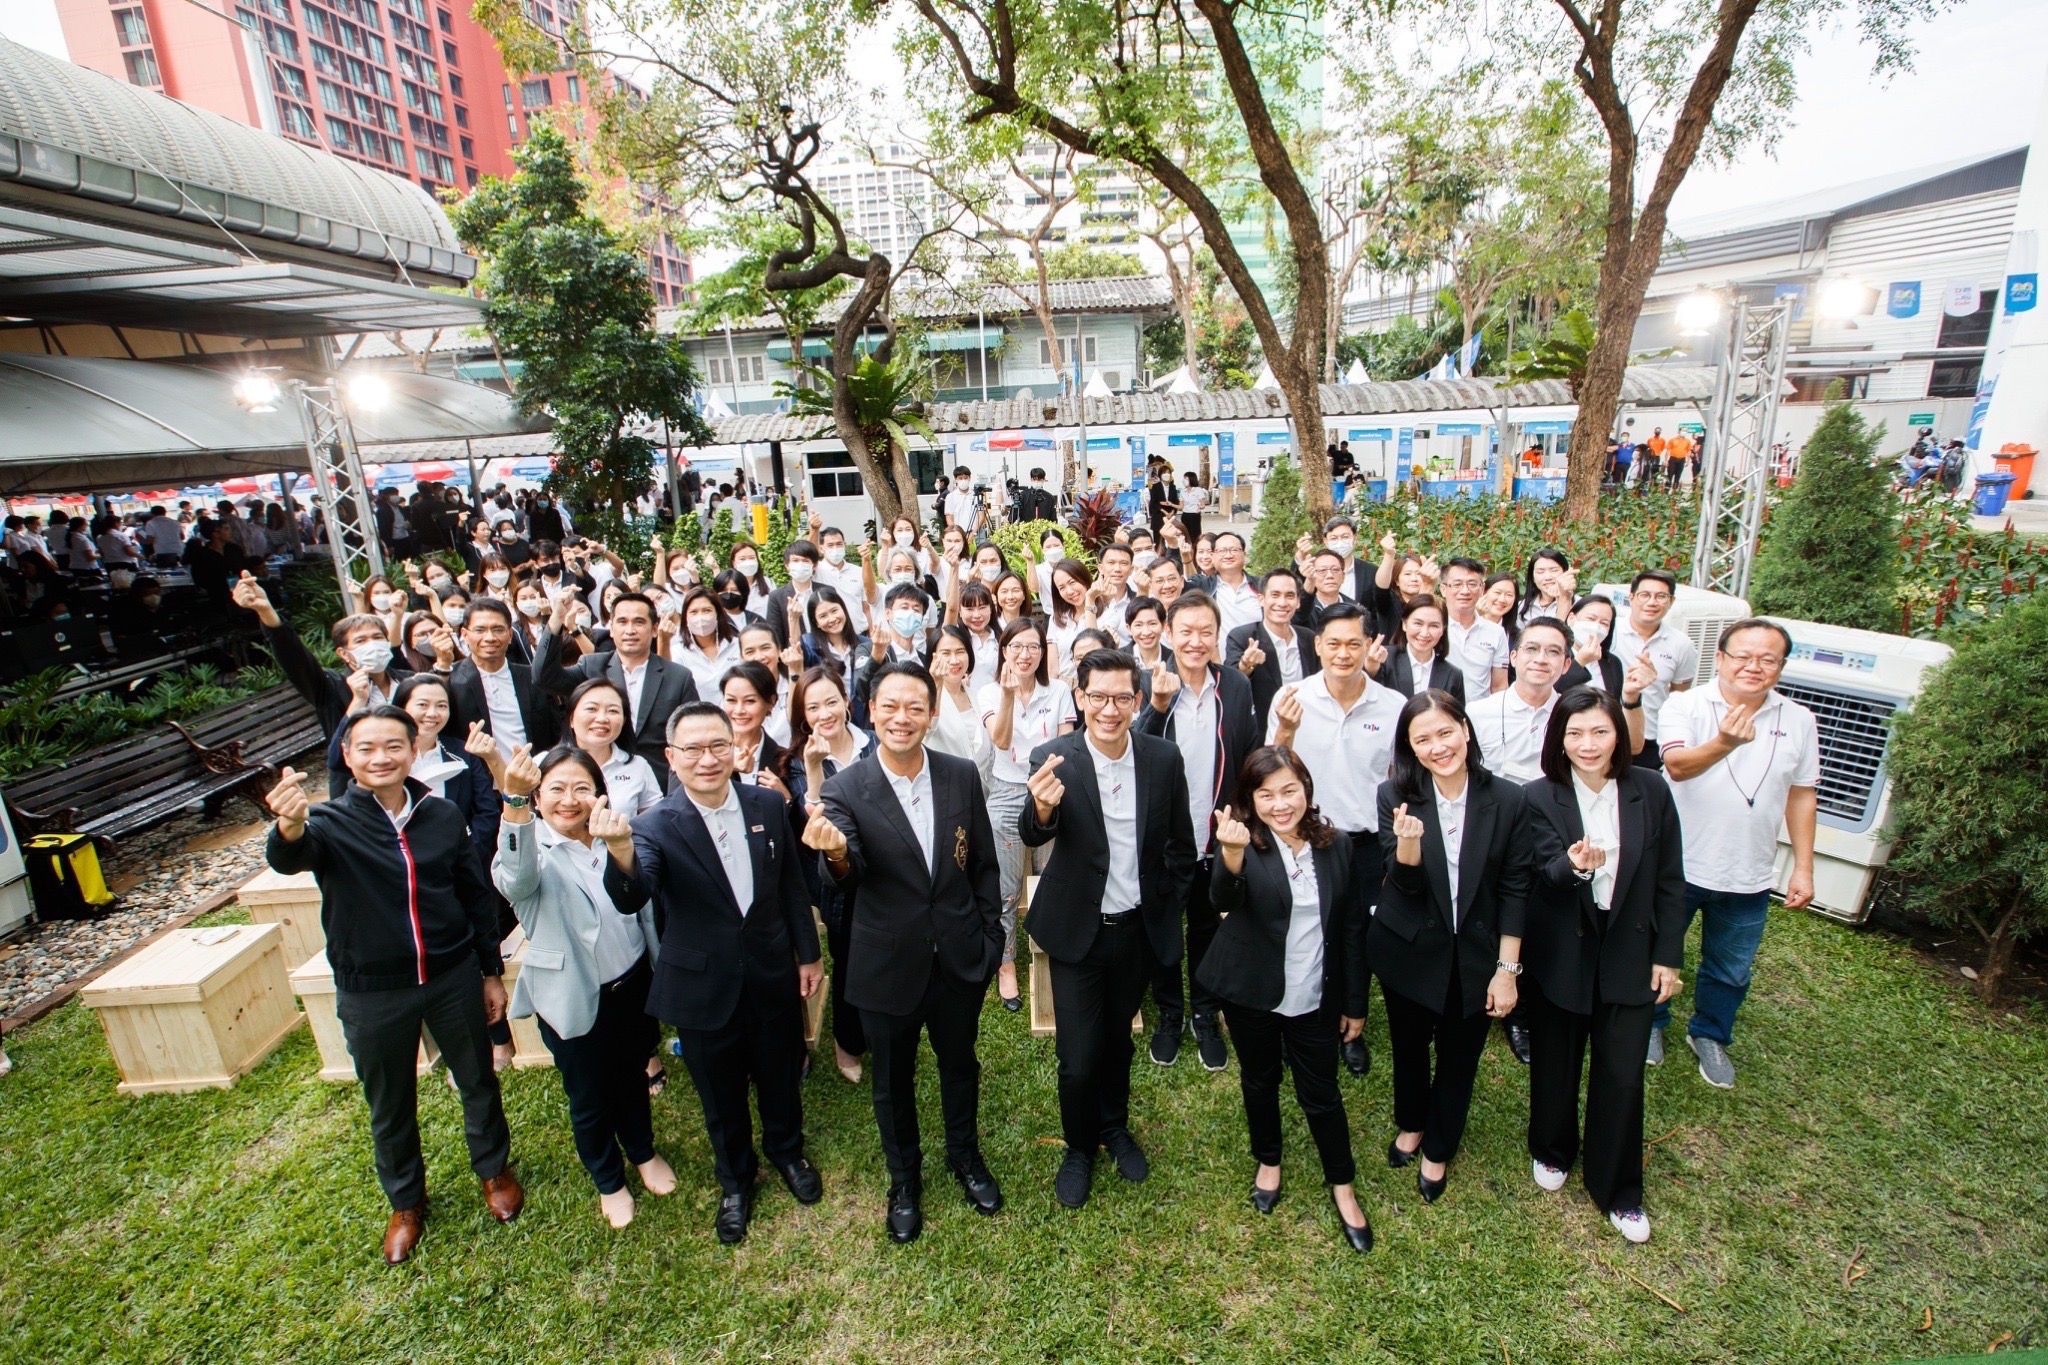 EXIM BANK จัดงานกรรมการผู้จัดการพบพนักงาน โอกาสฉลองครบรอบ 29 ปี ขอบคุณคนตัวเล็กและพนักงานที่ร่วมกันขับเคลื่อนการพัฒนาประเทศไทยอย่างยั่งยืน